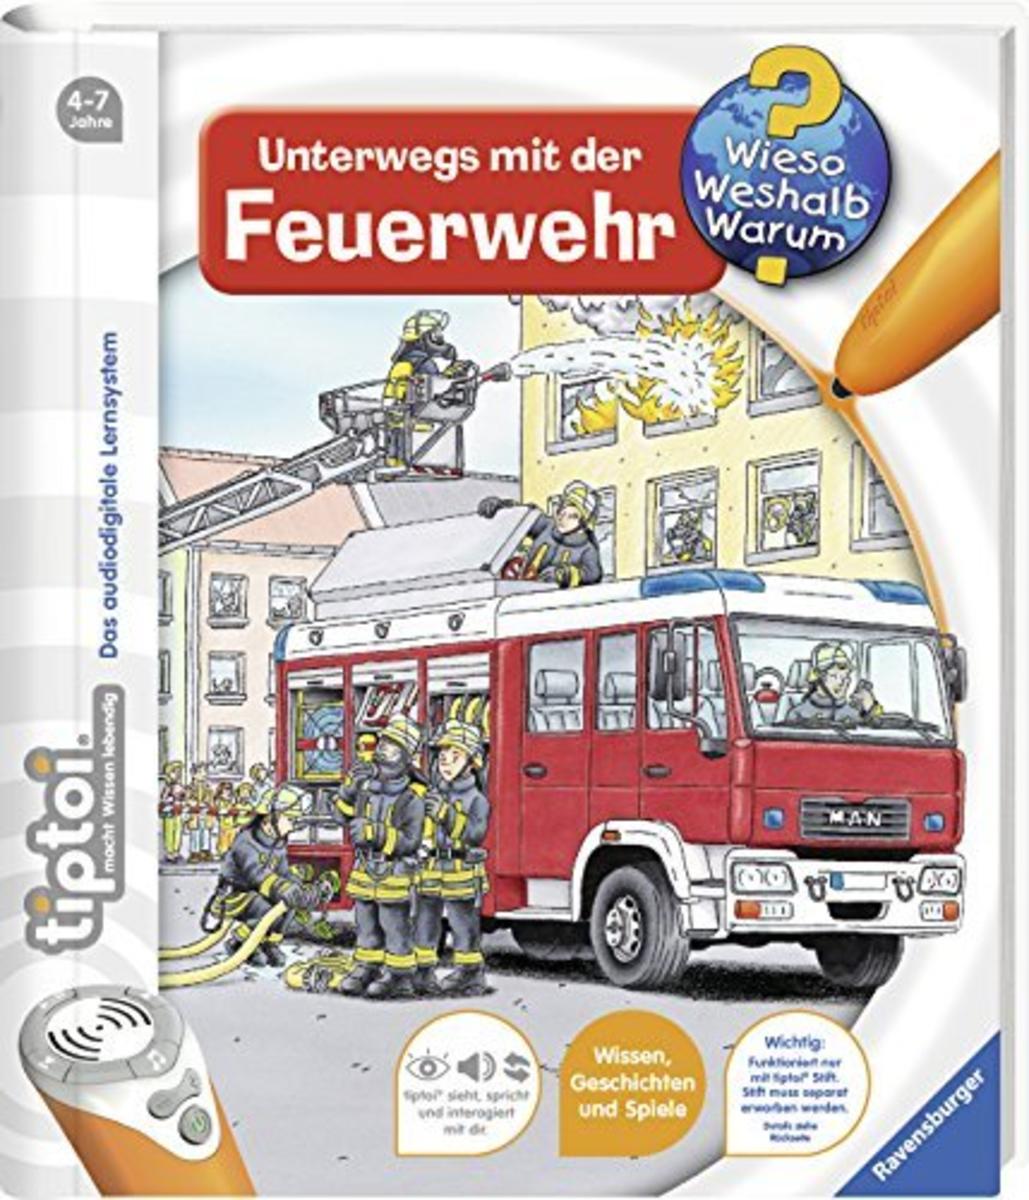 tiptoi Deutschland (tiptoi® Lern mit Mir!, Kinderbuch)   00110 tiptoi Der Stift, Lernspielzeug für Kinder